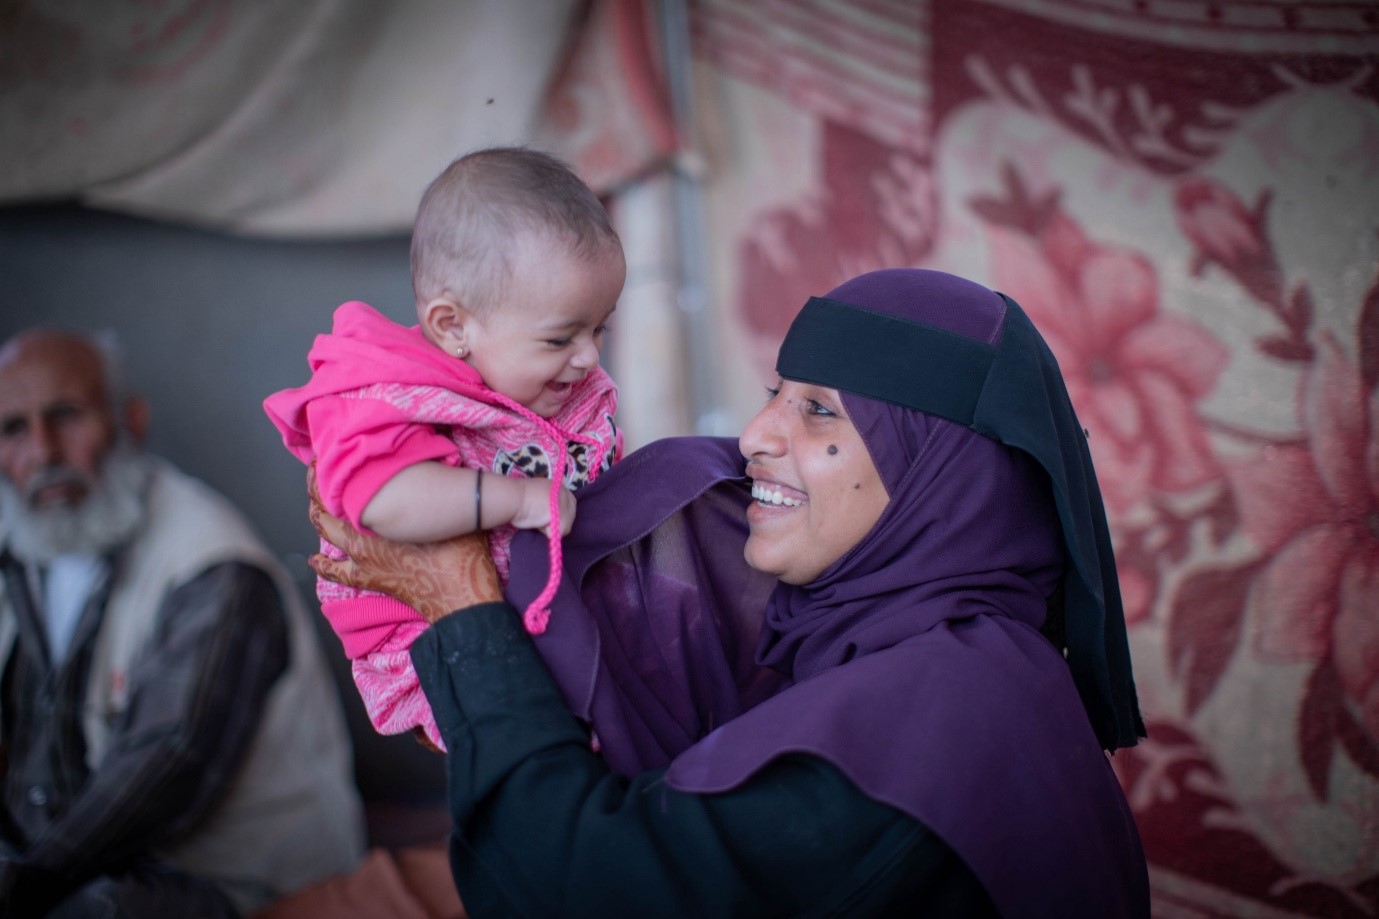 نوال وابنتها سلمى. نوال قابلة مدربة وتعيش الآن في مخيم للنازحين داخلياً في لحج حيث تواصل مساعدة النساء على الولادة. الصورة: برنامج الأغذية العالمي / محمد عوض